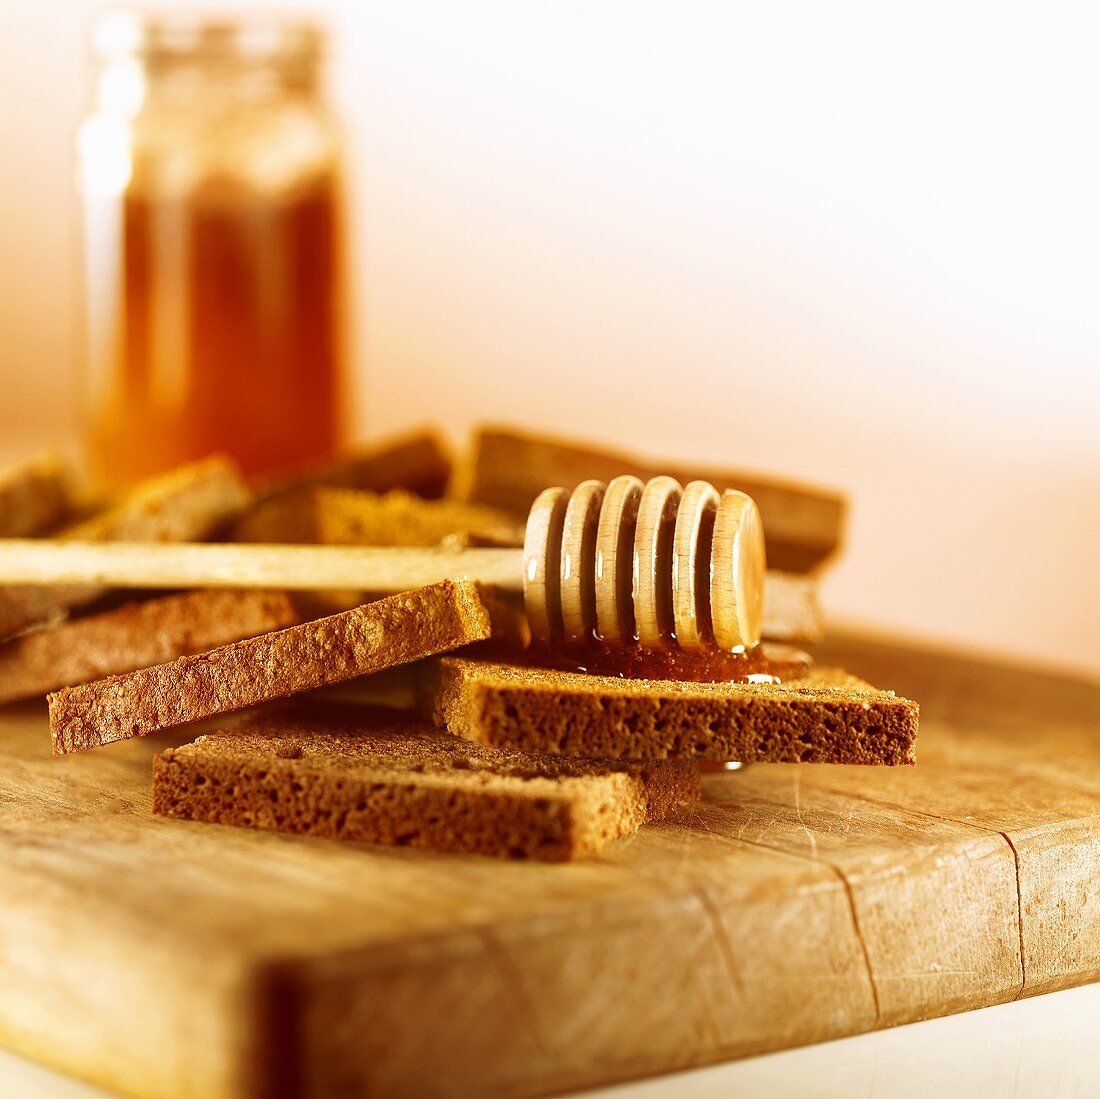 Vollkornbrot mit Honig und Honiglöffel auf einem Brett